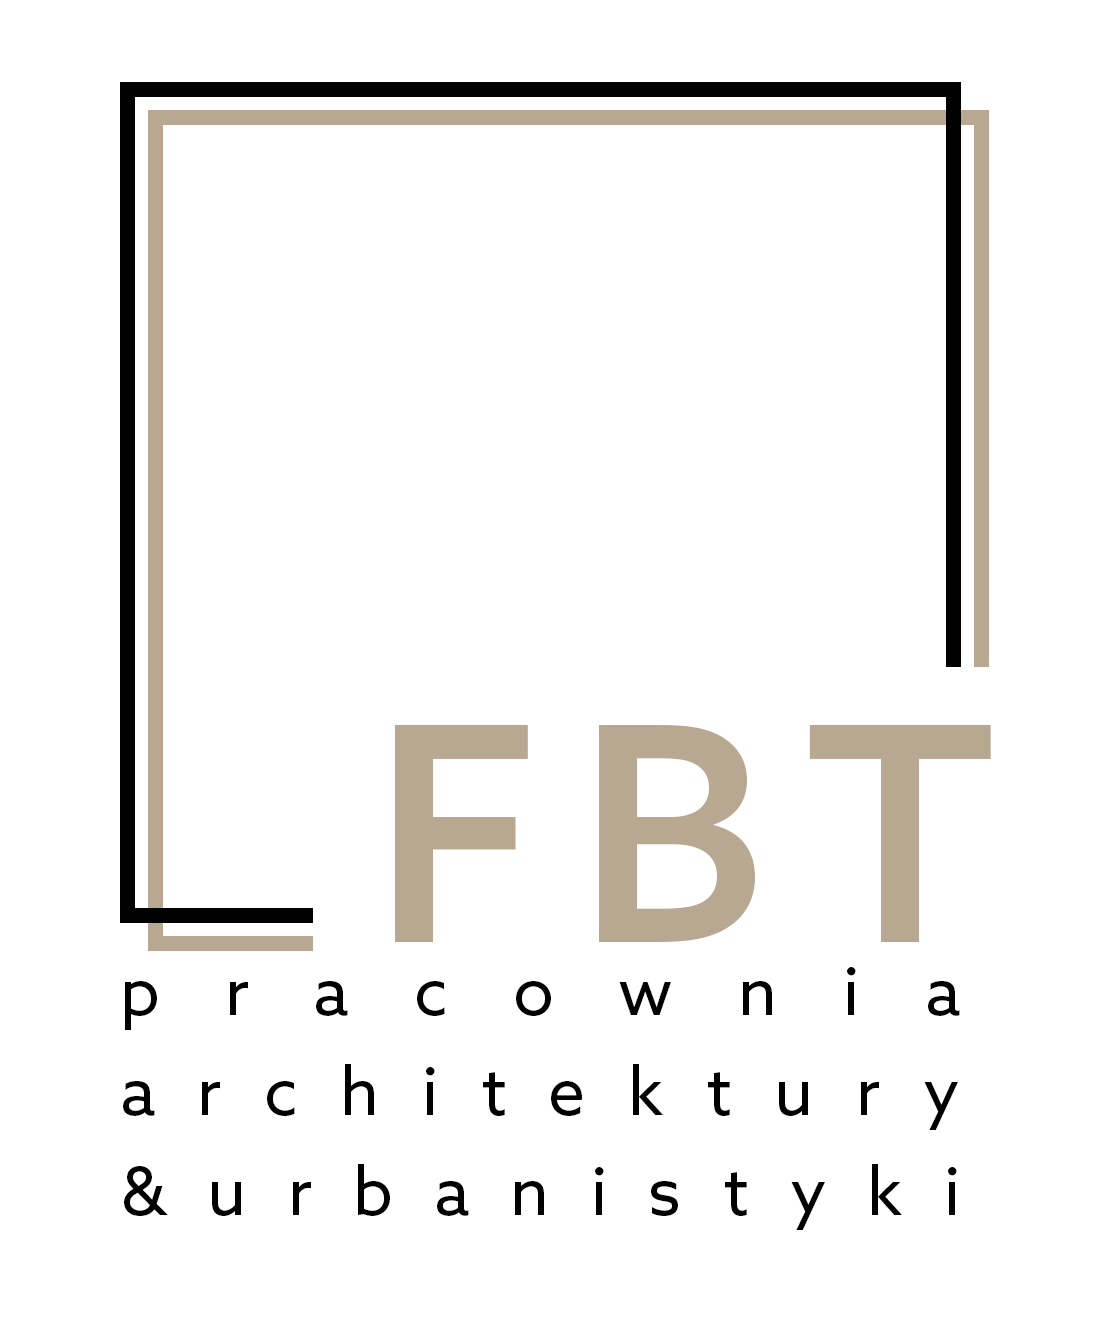 Pracownie Biuro architektoniczne Warszawa Pracownia architektury i urbanistyki